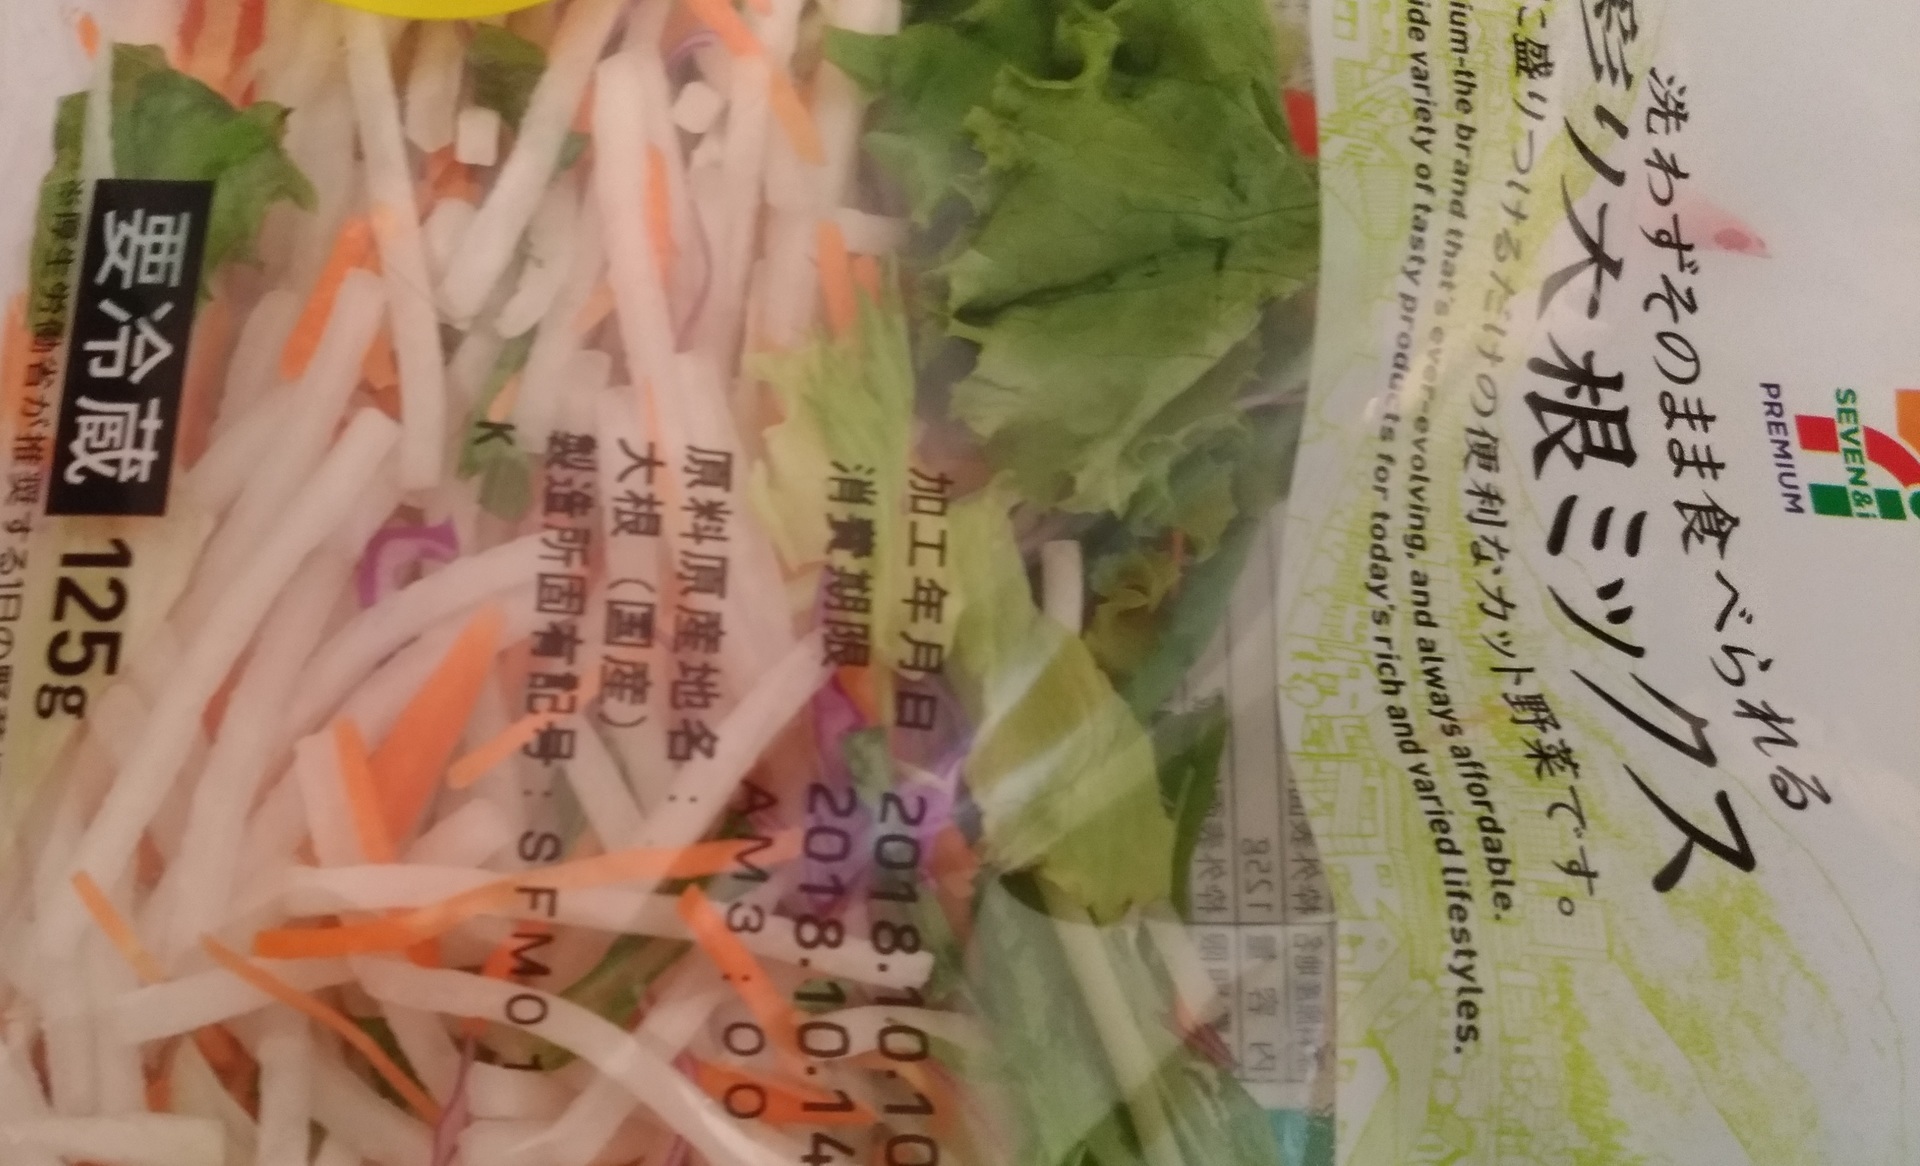 カット野菜 セブンイレブン 大阪おにぎり100円セールブログ新作メニュー